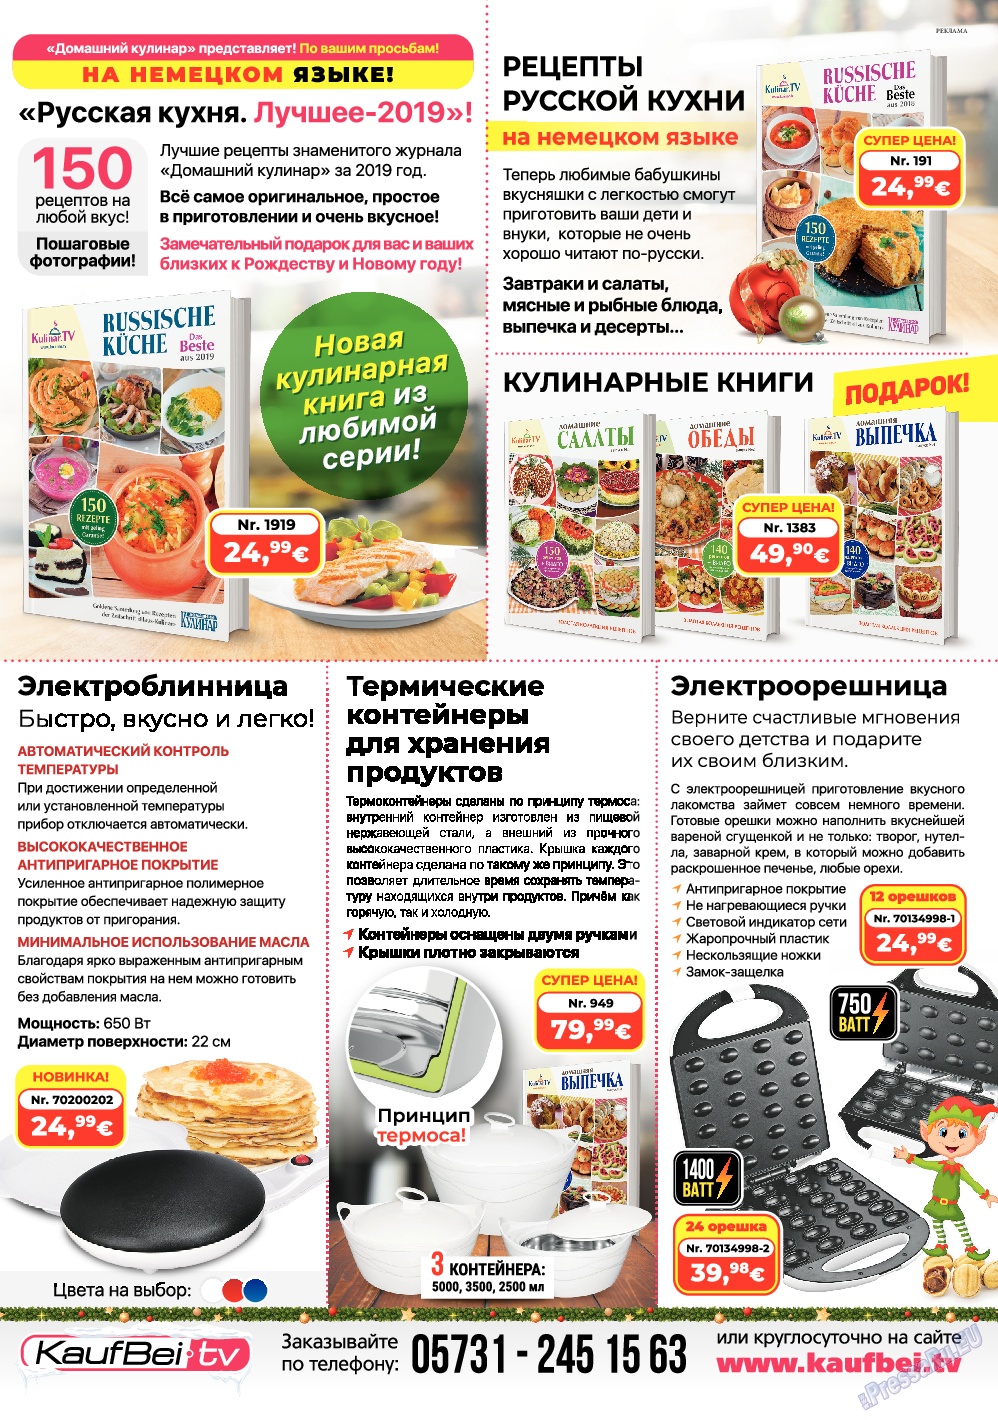 Домашний кулинар, журнал. 2020 №1 стр.79